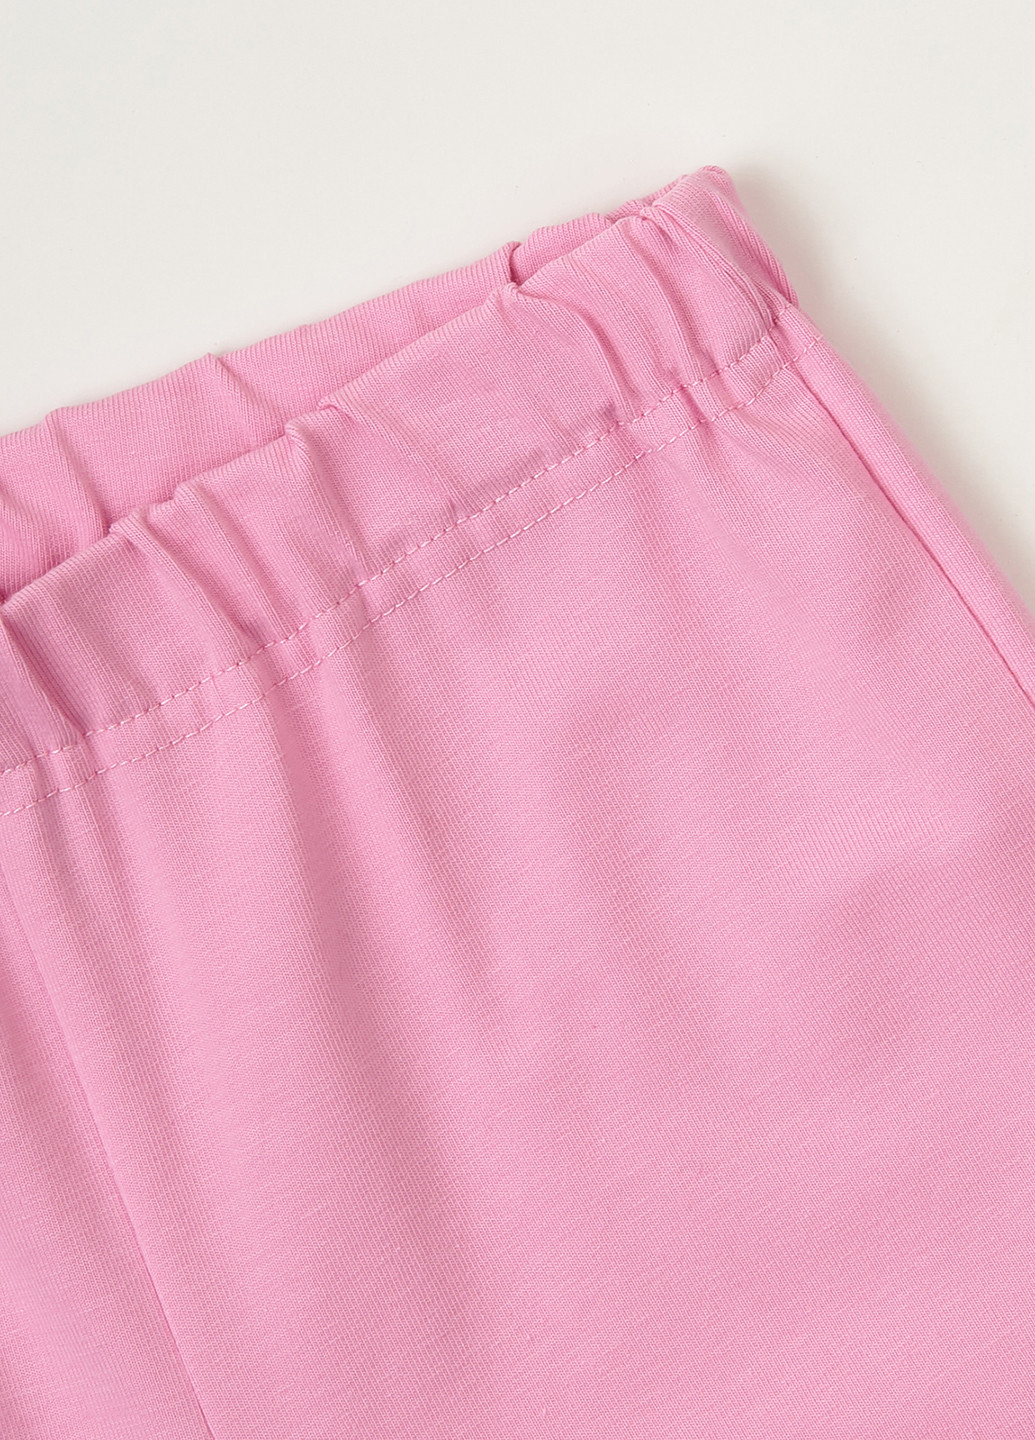 Рожева всесезон піжама (світшот, штани) свитшот + брюки Ляля